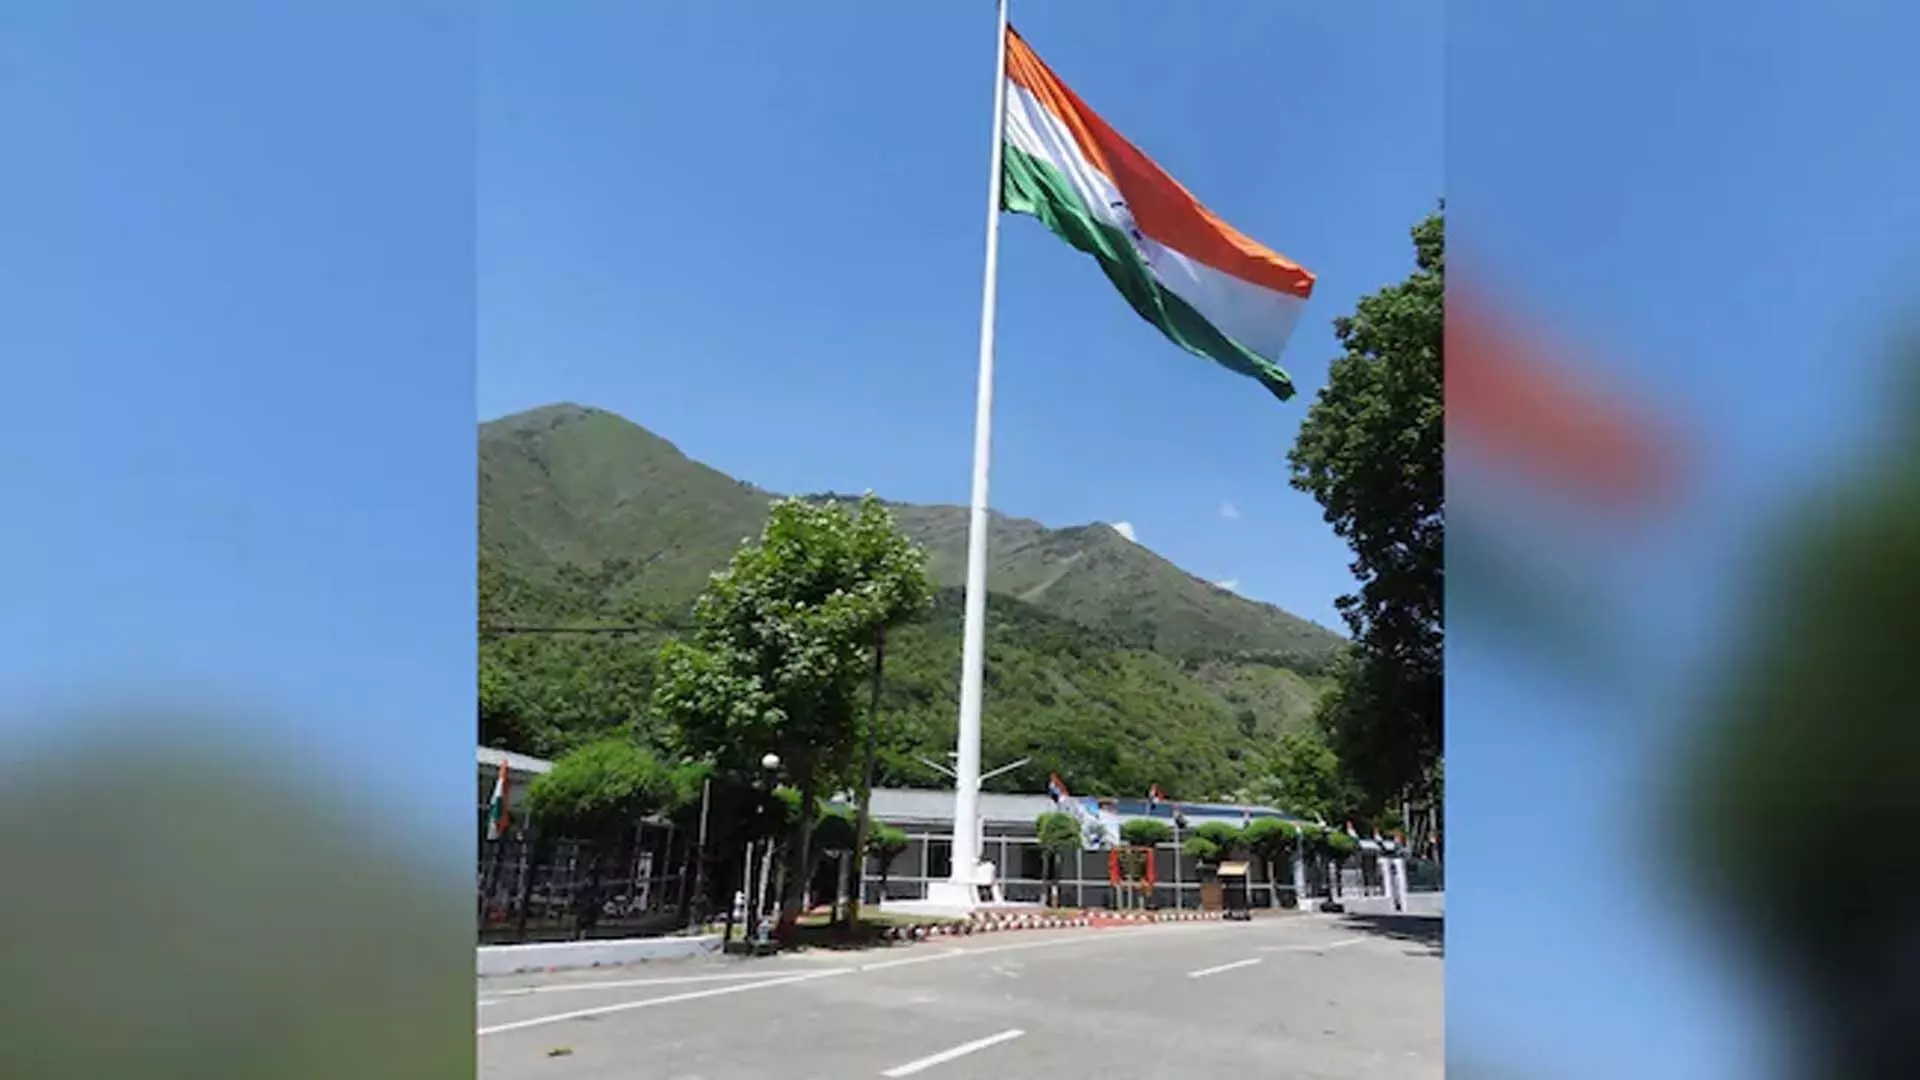 जम्मू-कश्मीर में नियंत्रण रेखा के पास लगाया गया 108 फुट का तिरंगे वाला झंडा